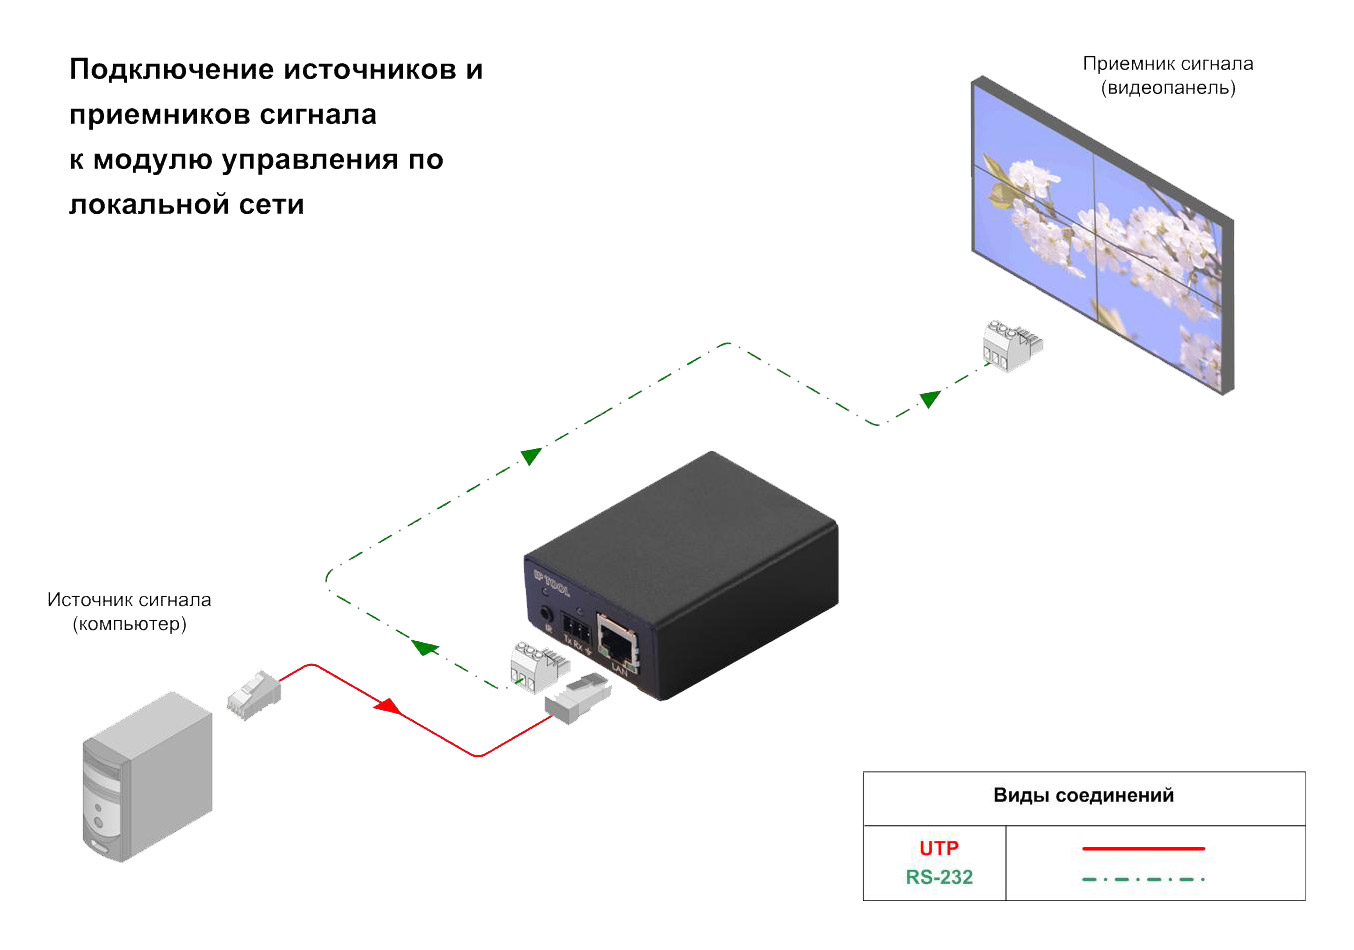 Схема подключения, Модуль управления по локальной сети, AV Production, LIR-RMC-5